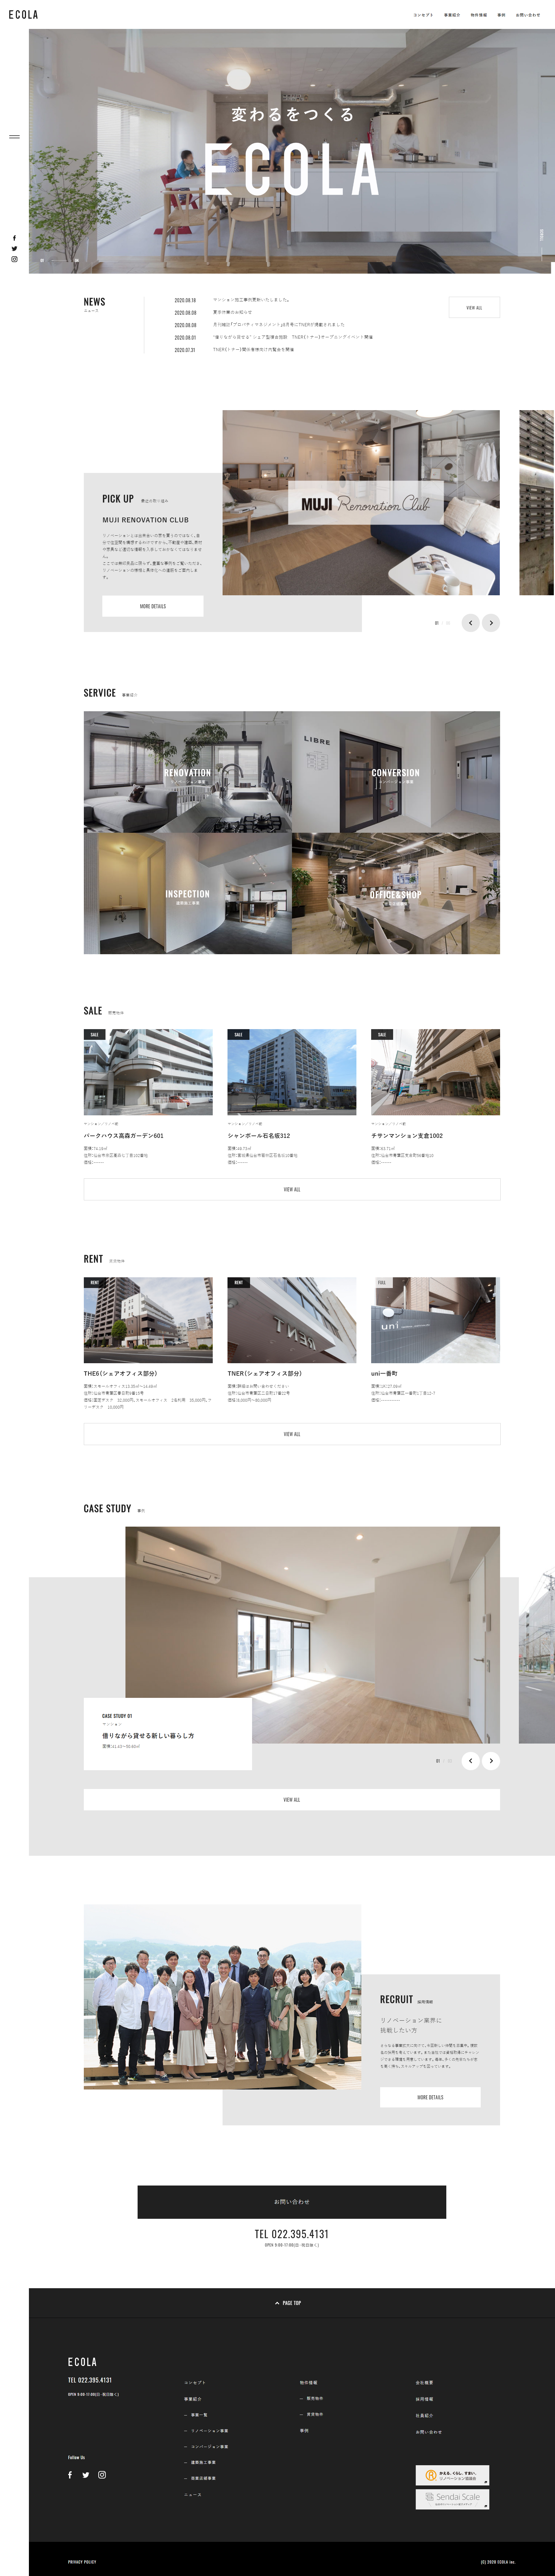 建筑行业网站设计